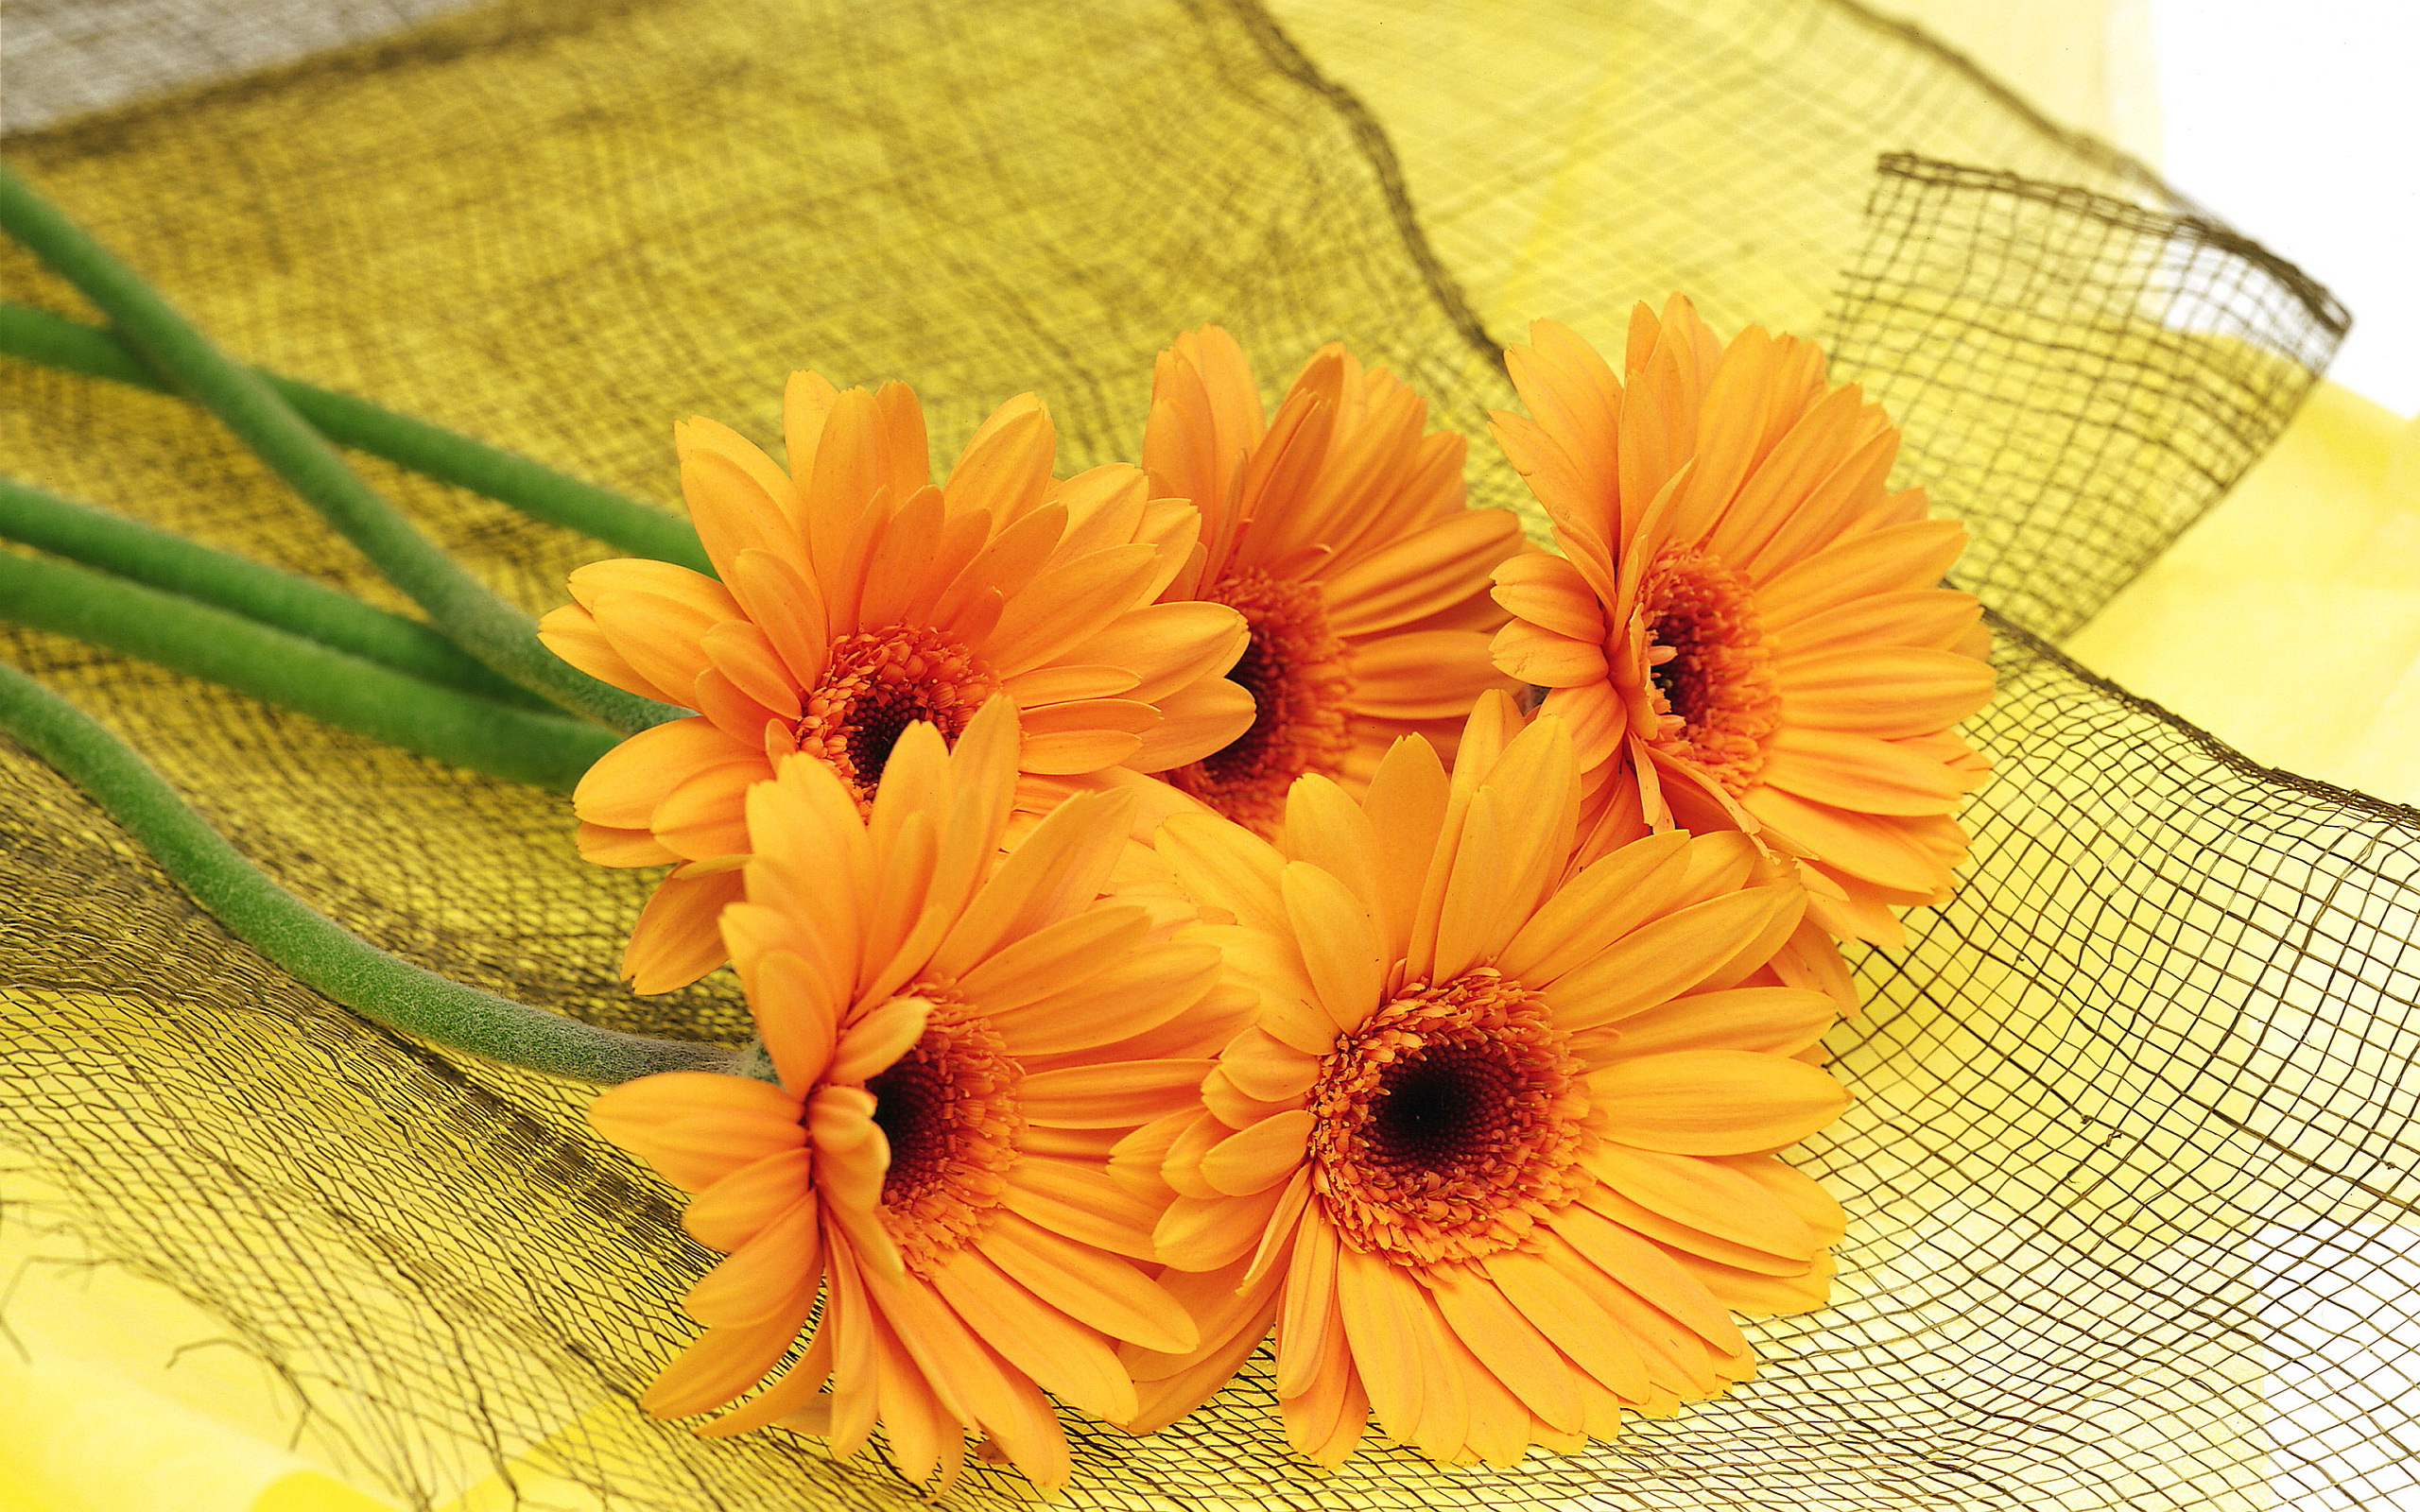 오렌지 꽃 무늬 벽지,꽃,거베라,이발사 데이지,주황색,노랑